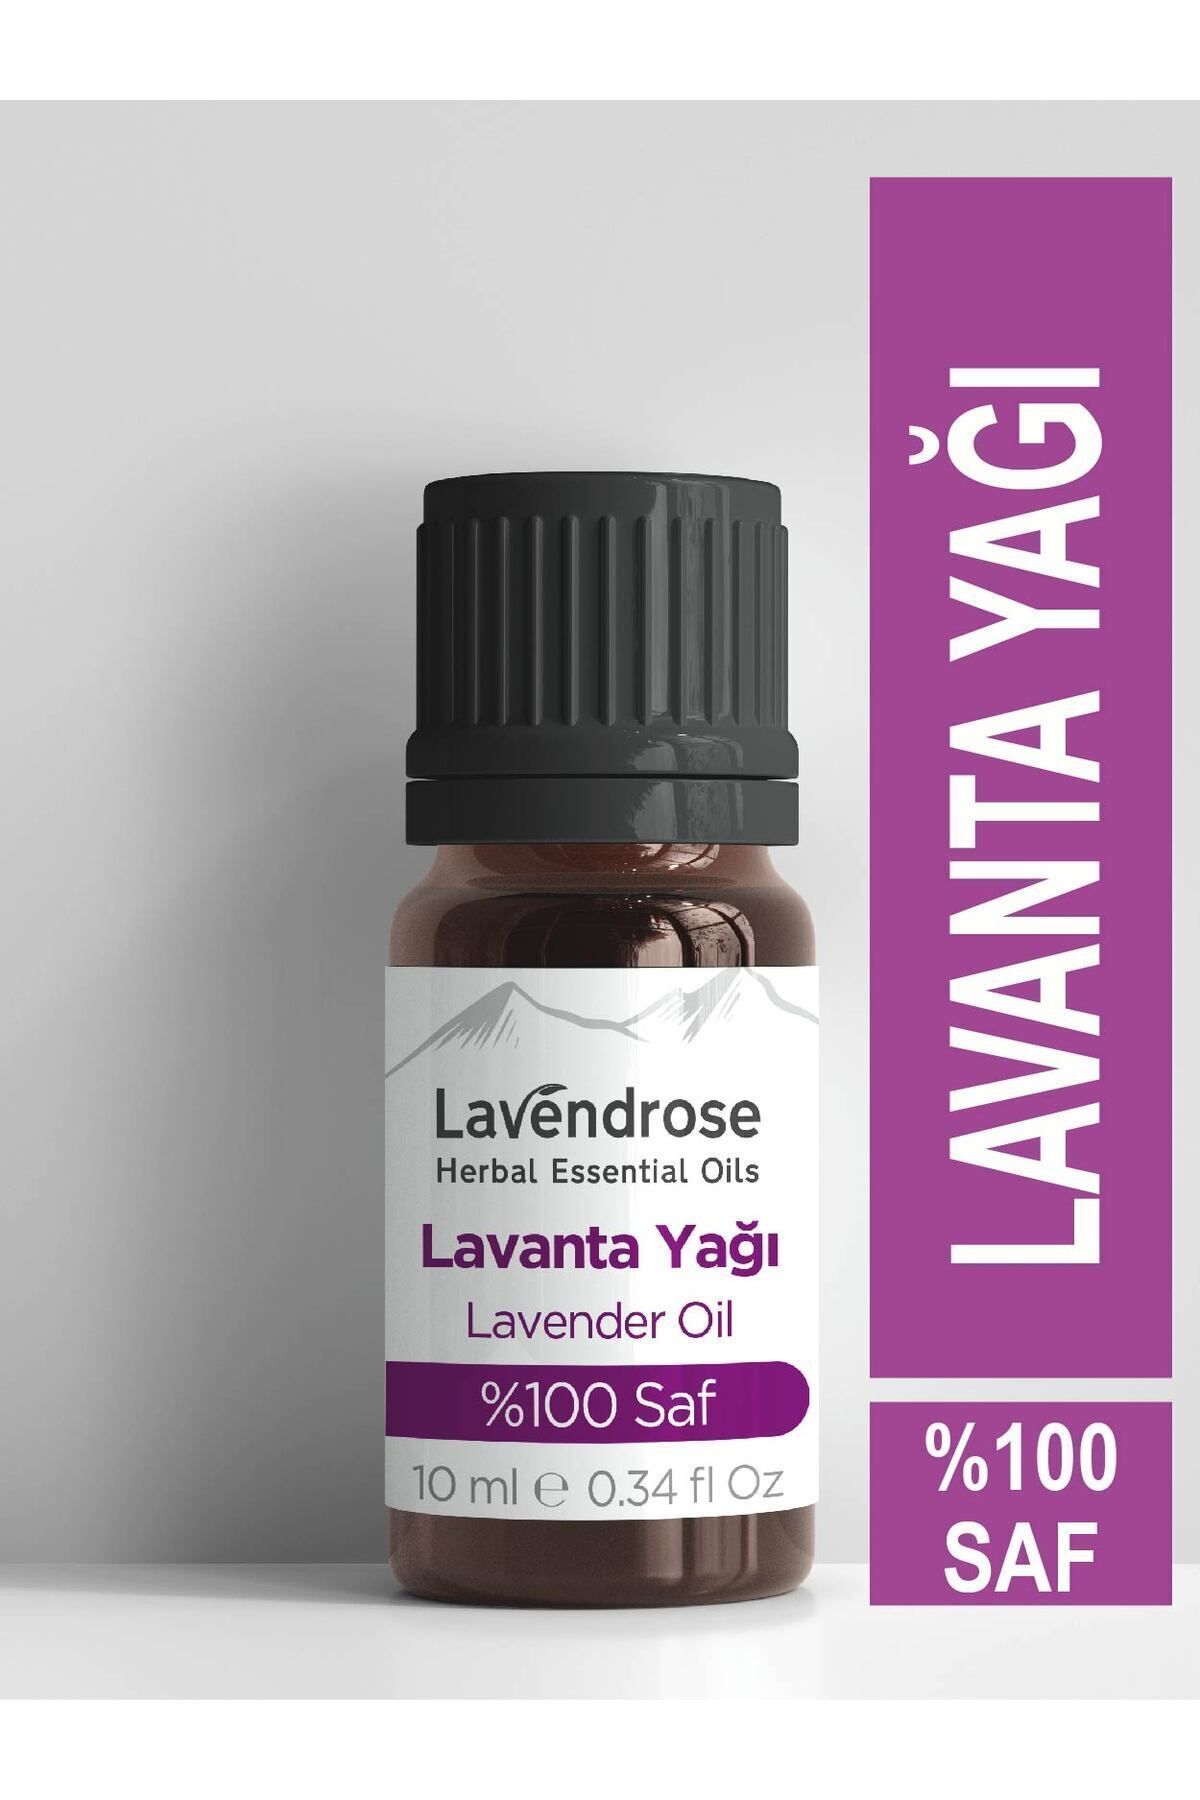 Lavendrose Lavanta Yağı %100 Saf - Bitkisel Aromaterapi Lavanta Uyku Ve Stres Yağı 10ml - Uçucu Yağ